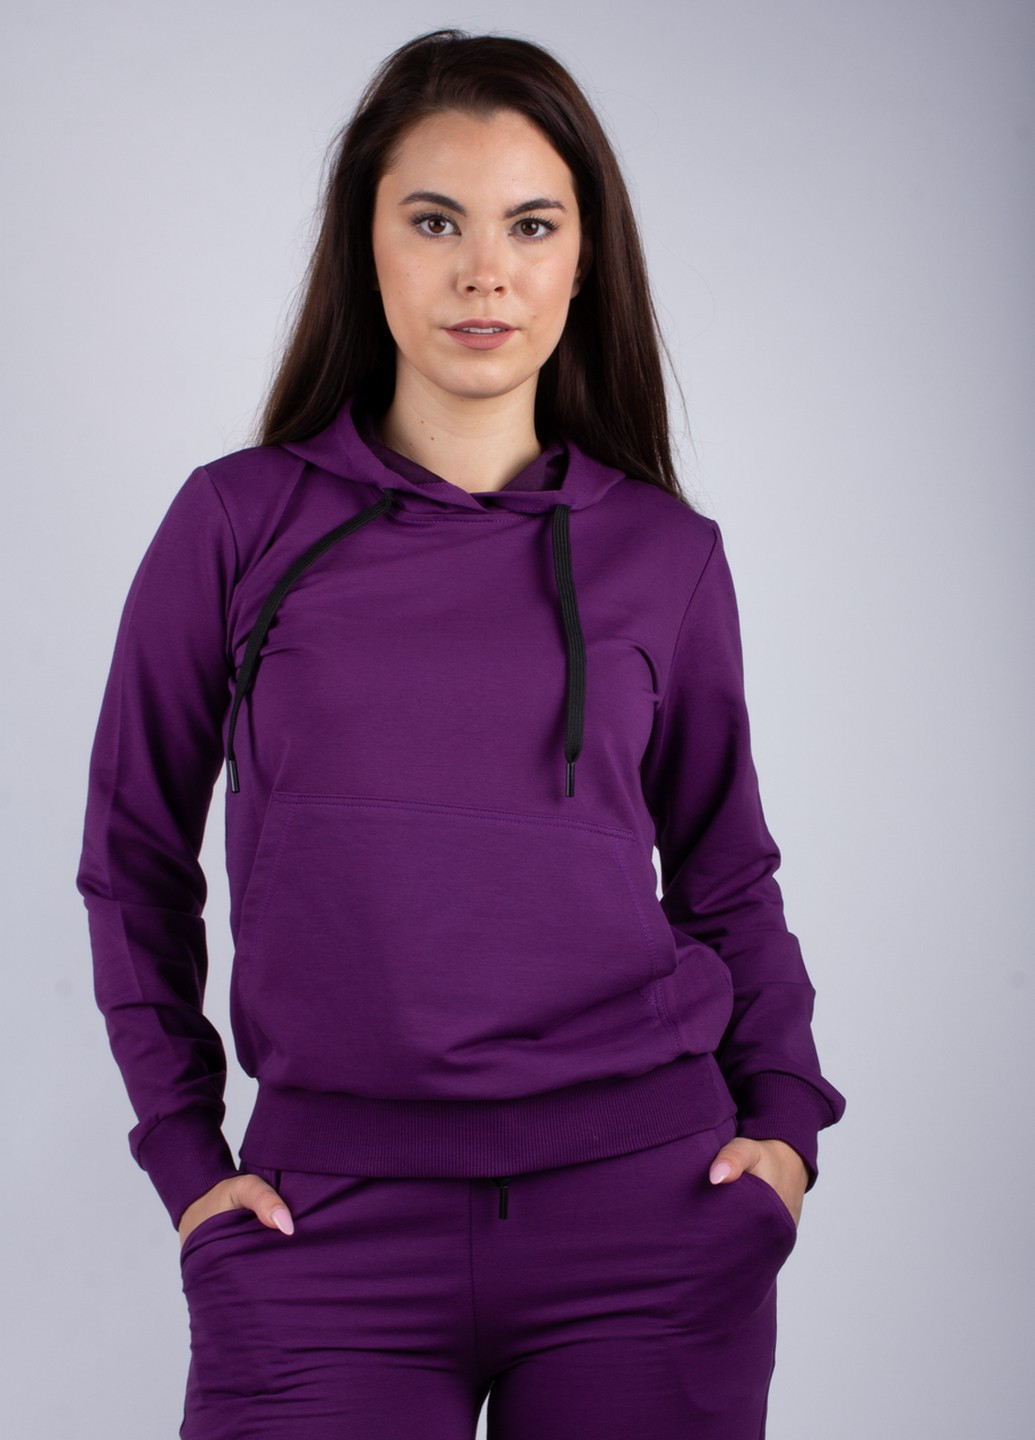 Женский спортивный костюм Lion брючный однотонный фиолетовый спортивный лайкра, полиэстер, хлопок